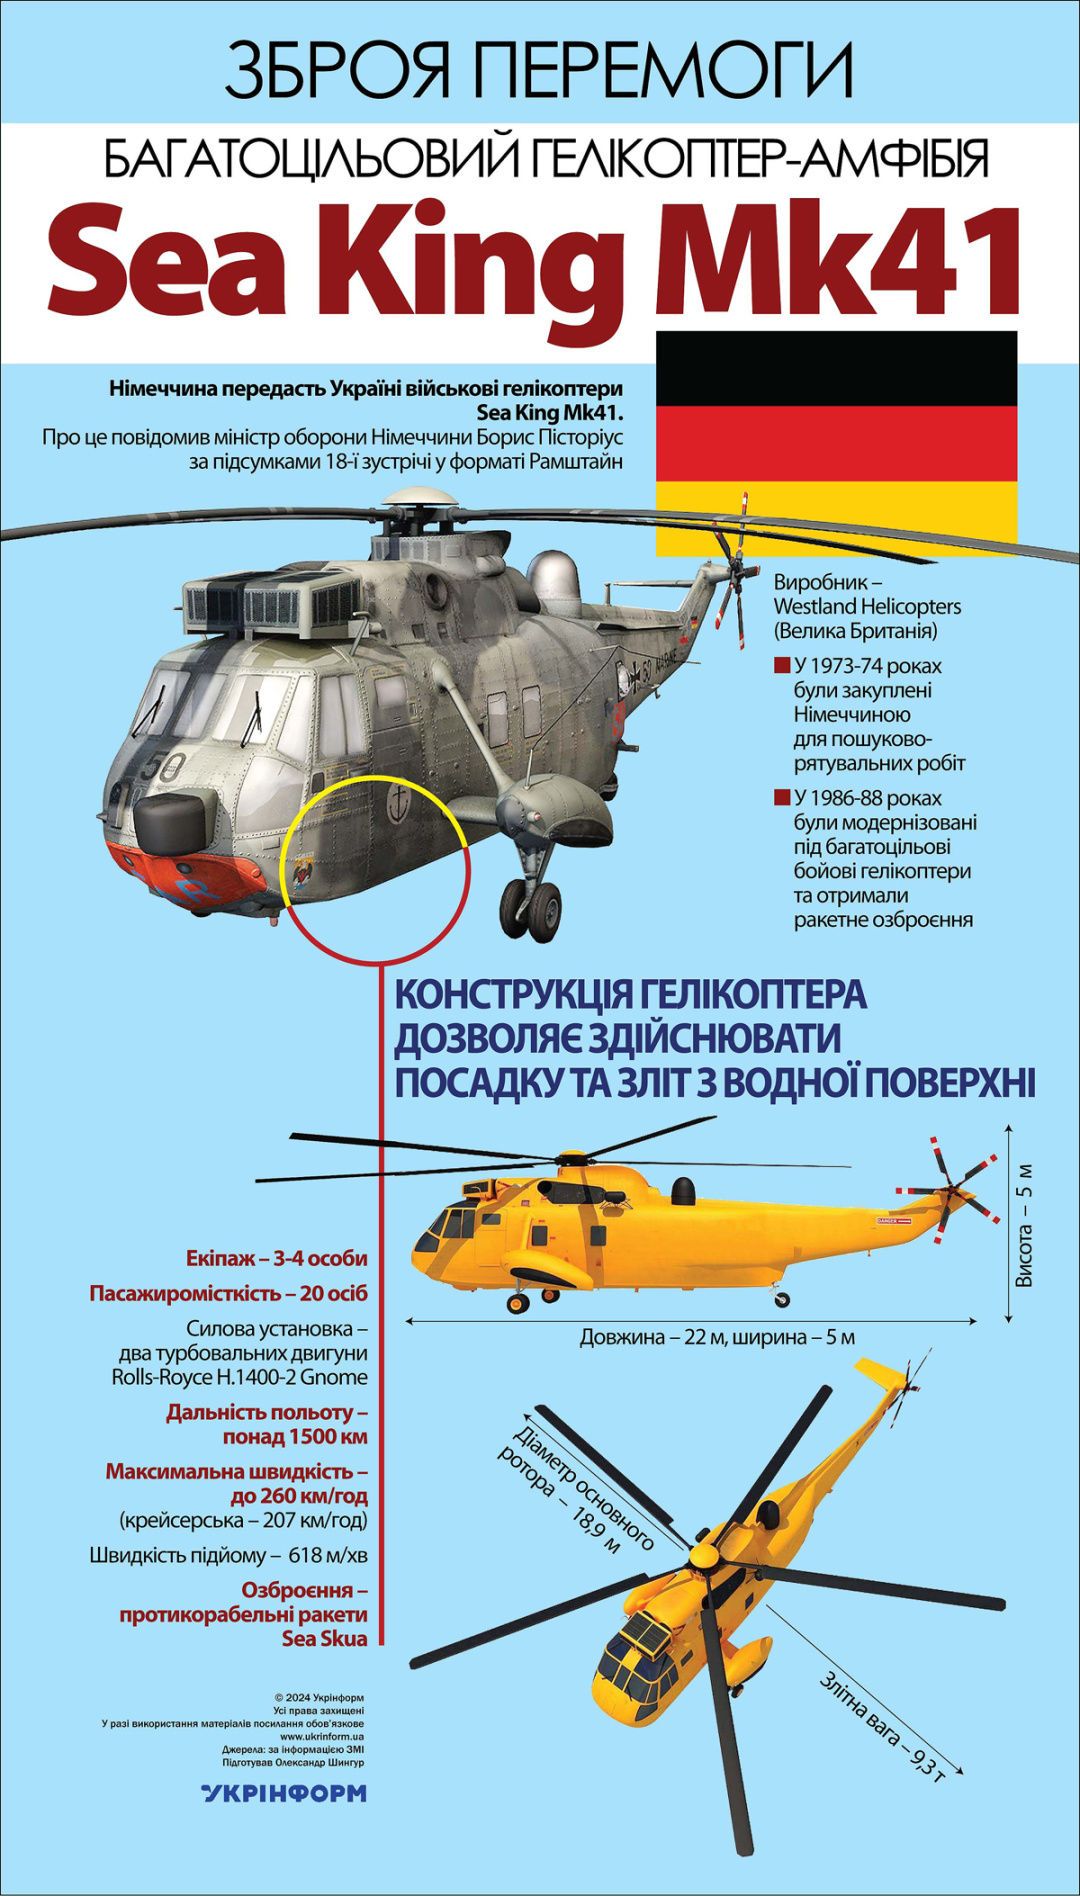 Кроме вертолётов, Германия будет поставлять запчасти и учить украинских пилотов.